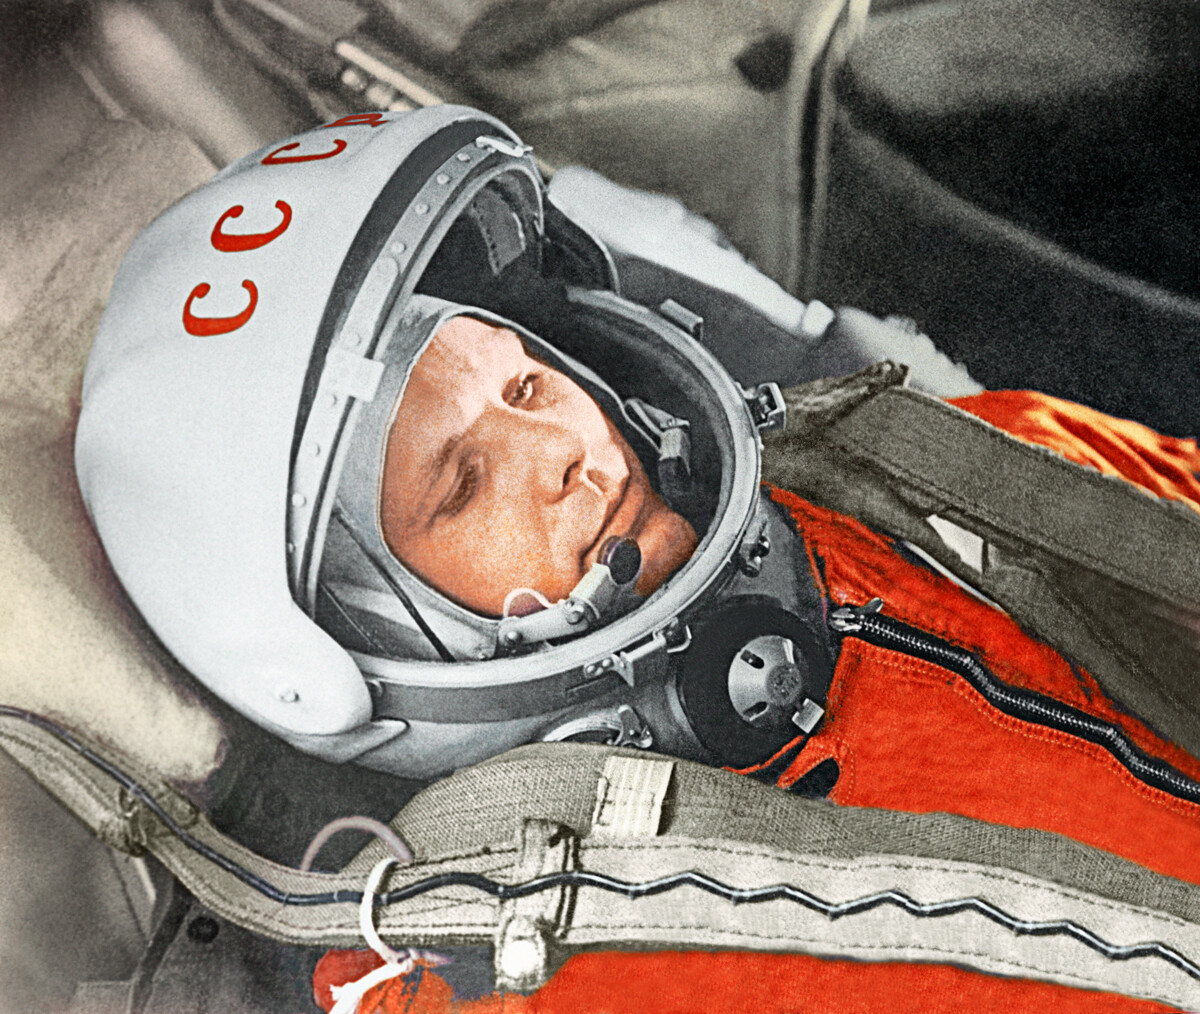 Kozmonavt Jurij Gagarin v pilotski kabini vesoljskega plovila Vostok-1 pred izstrelitvijo. Kozmodrom Bajkonur, 12. april 1961.